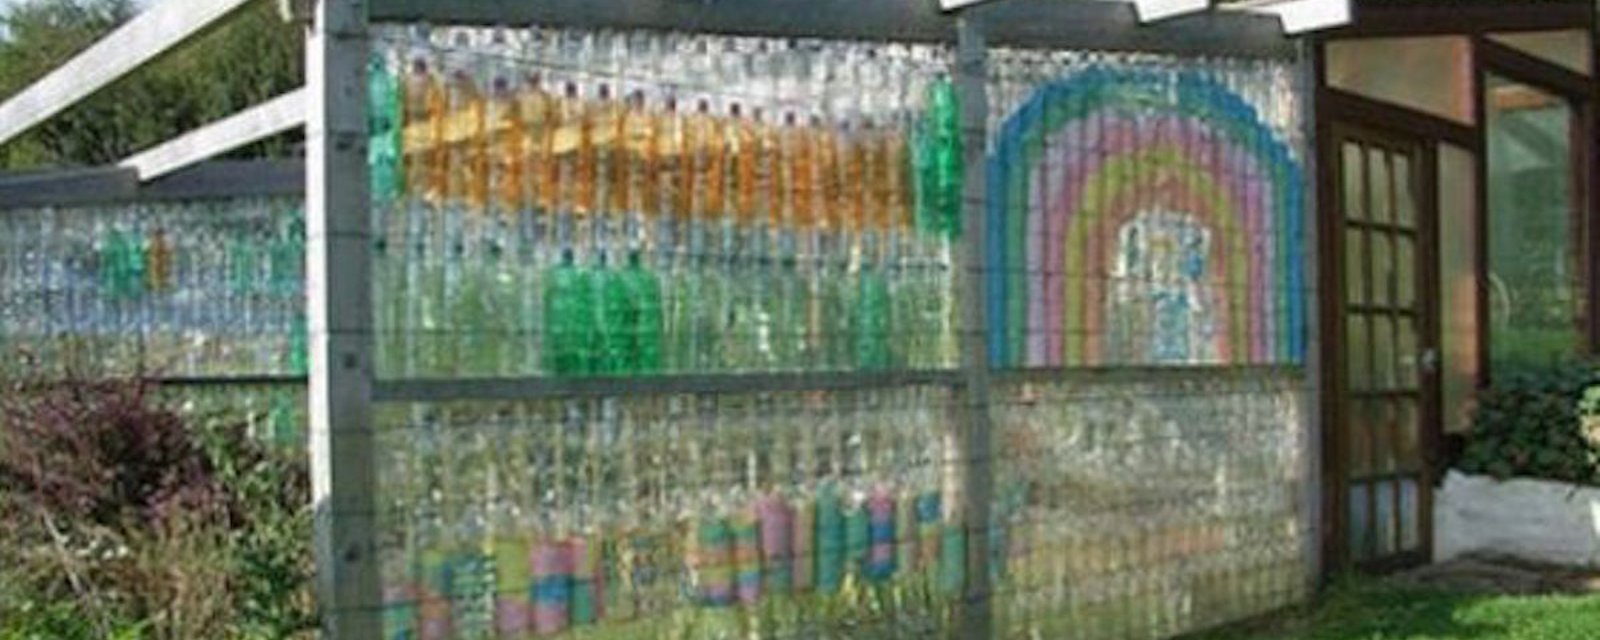 Comment construire une serre avec des bouteilles de plastique